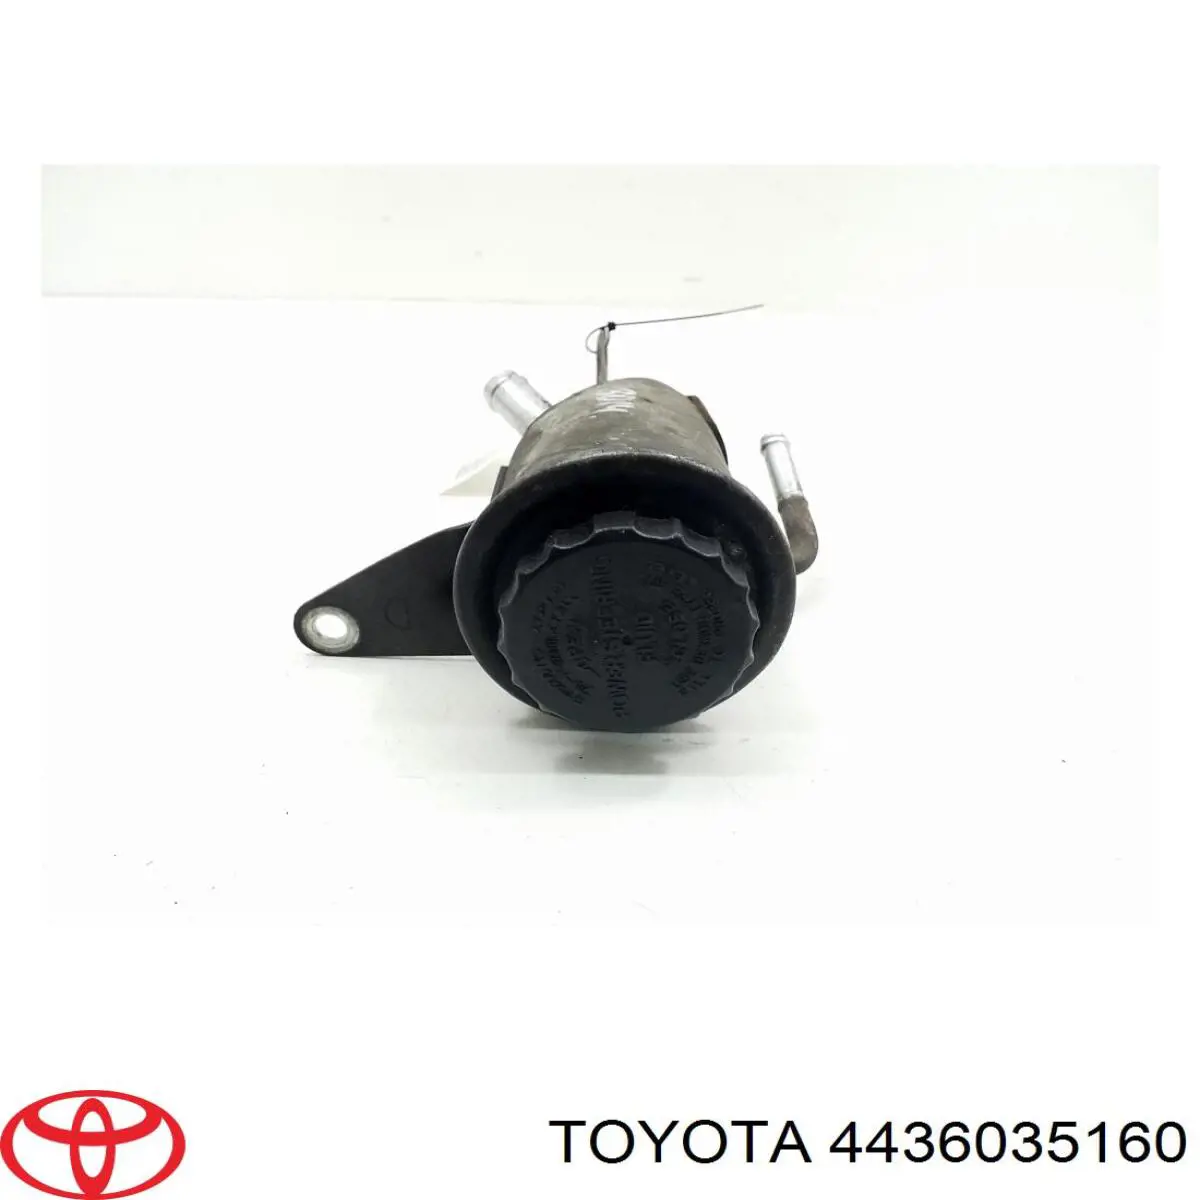 Depósito de bomba de dirección hidráulica para Toyota Land Cruiser (J12)